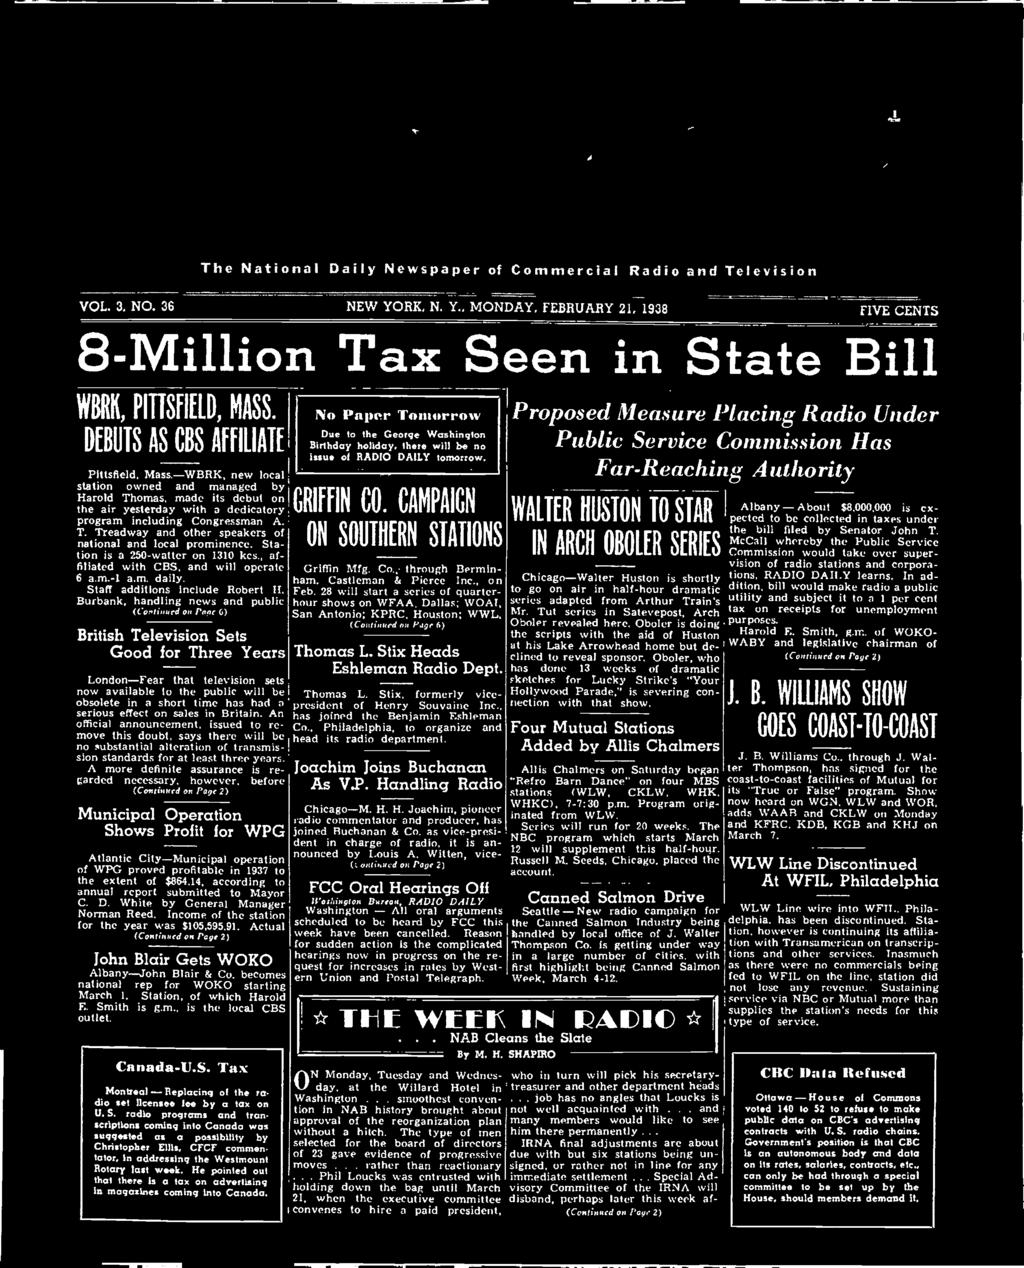 . job VOL. 3. NO. 36 NEW YORK, N. Y., MONDAY, FEBRUARY 21, 1938 8 -Million Tax Seen in State Bill WBRK, PITTSFIELD, MASS.